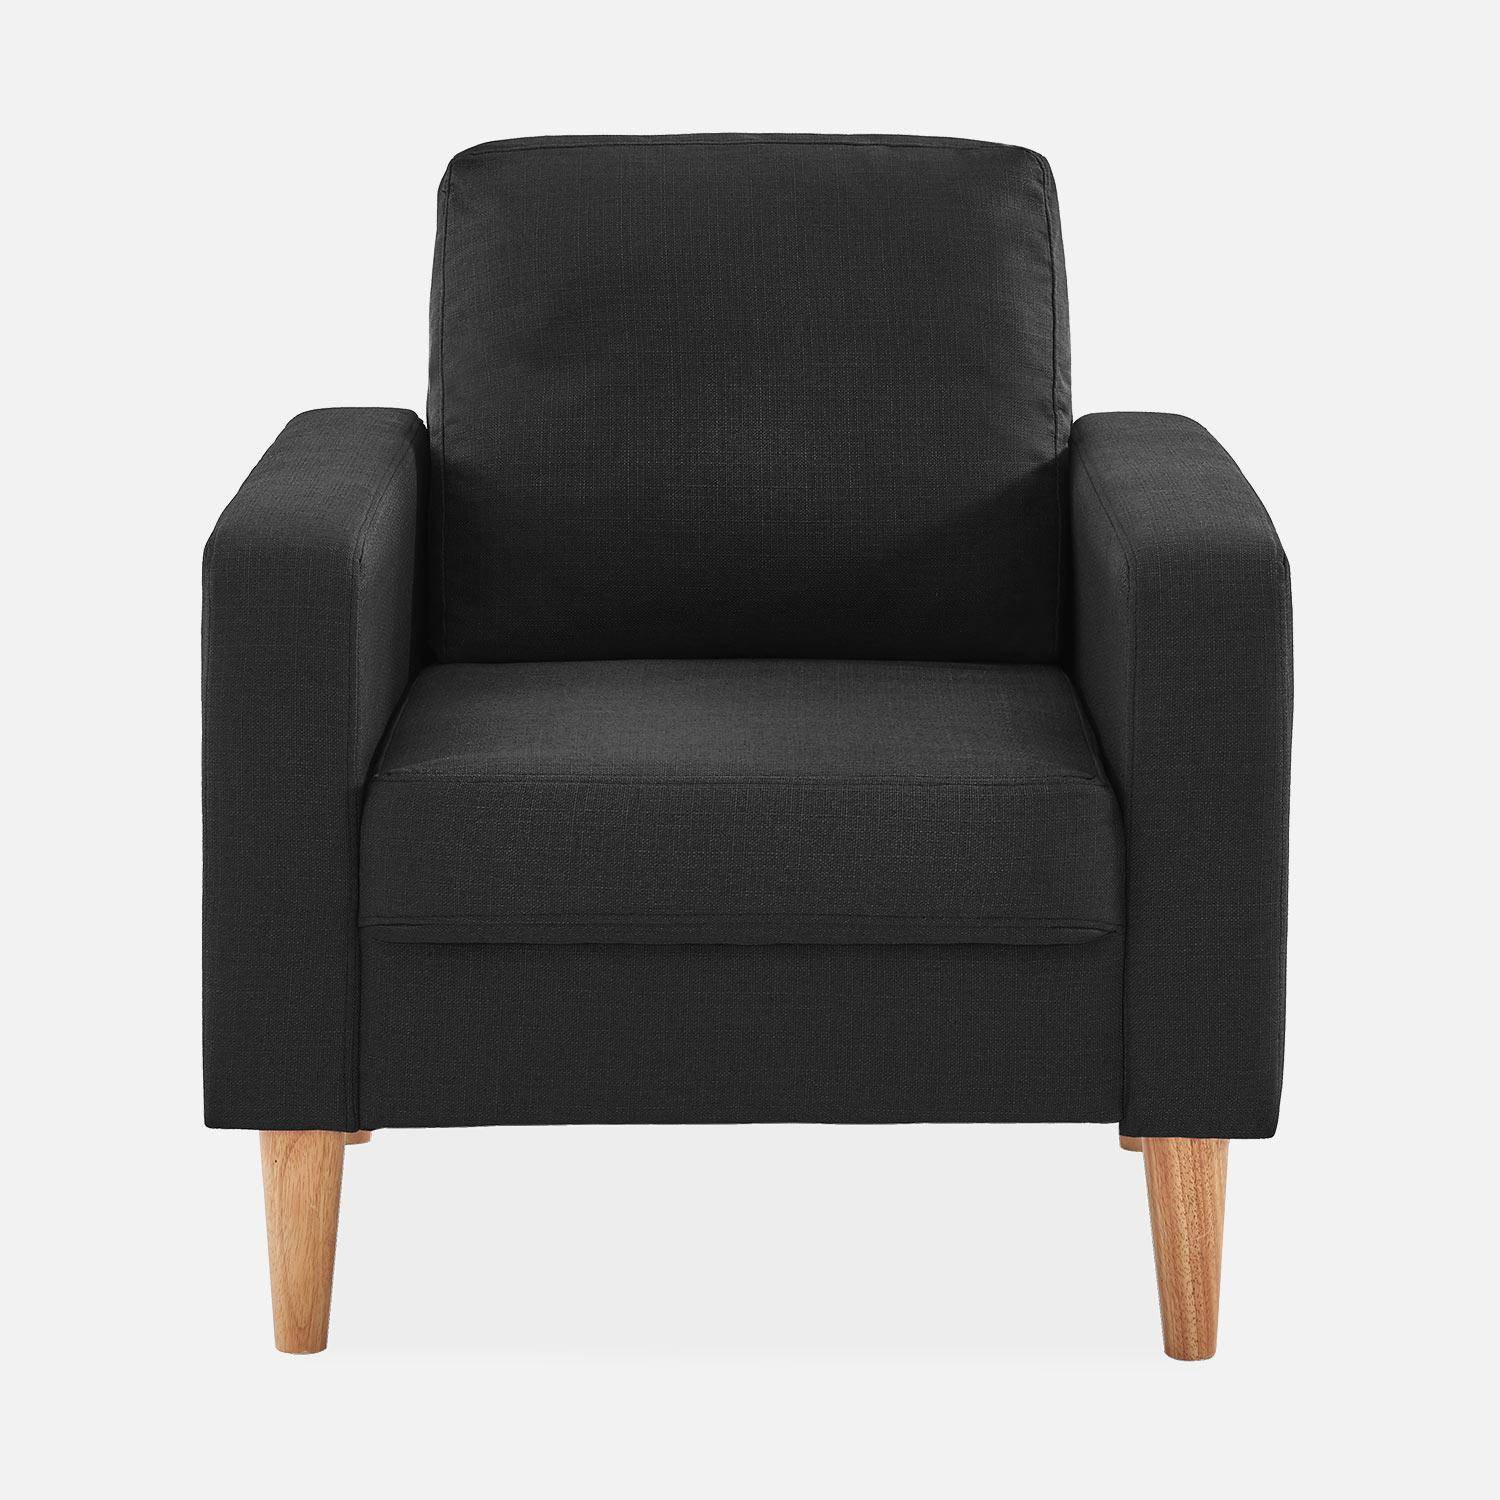 Sillón de tela gris oscuro - Bjorn - Sillón 1 plaza fijo recto patas madera, sillón escandinavo  ,sweeek,Photo3